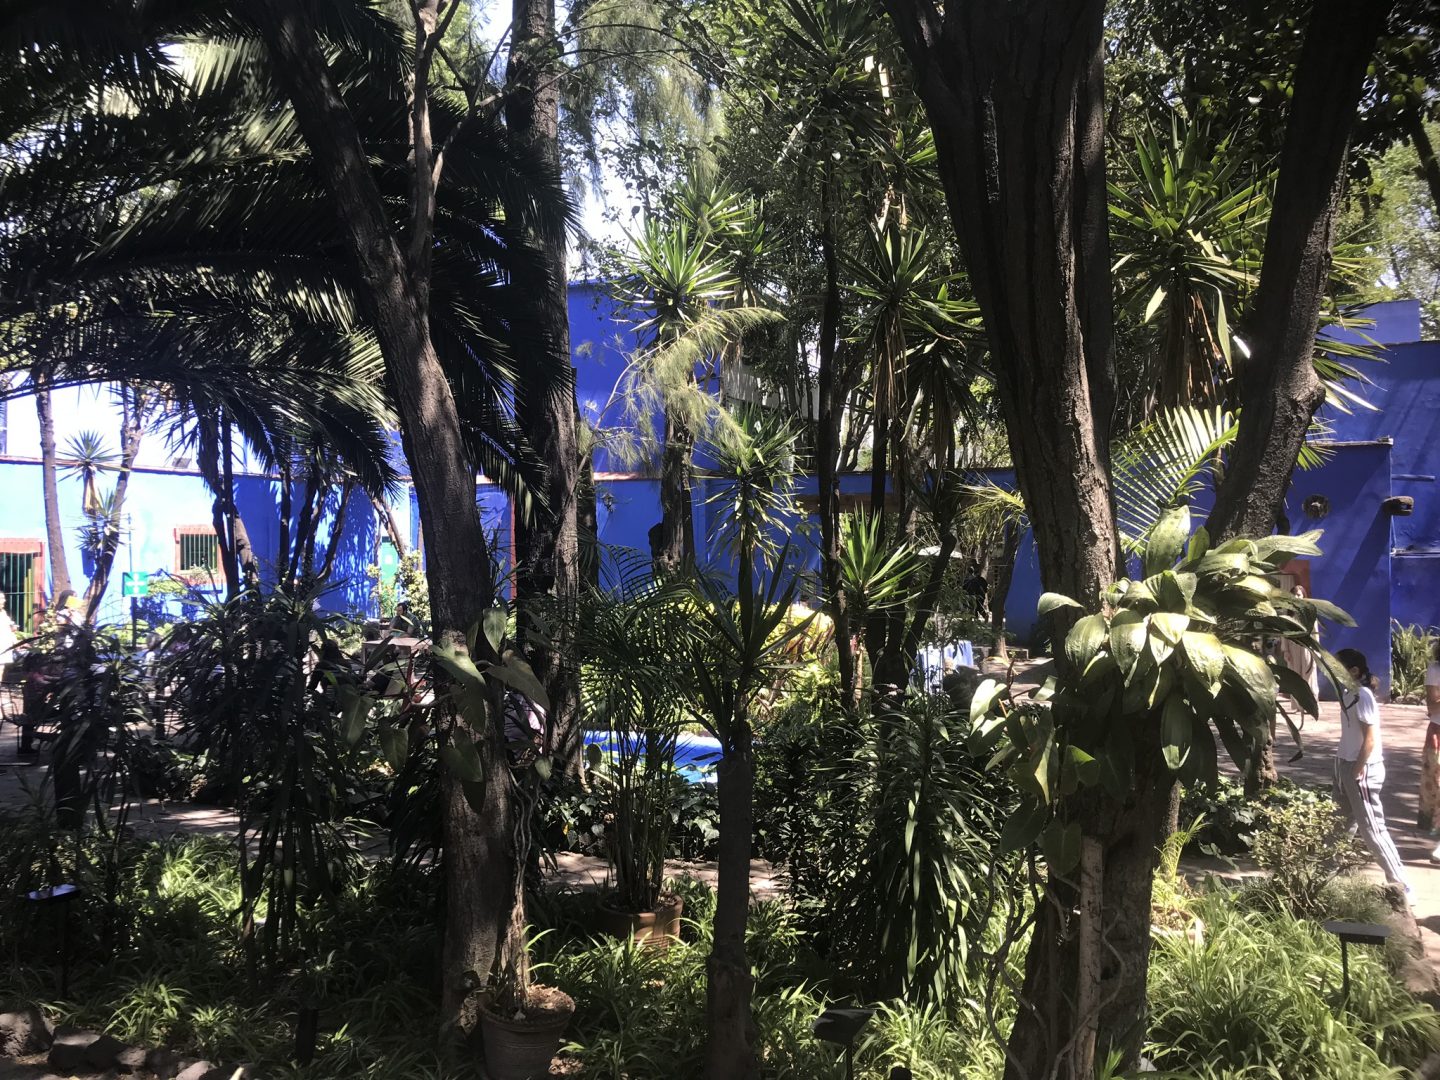 The grounds of Casa Azul, Frida Kahlo Museum, Mexico City